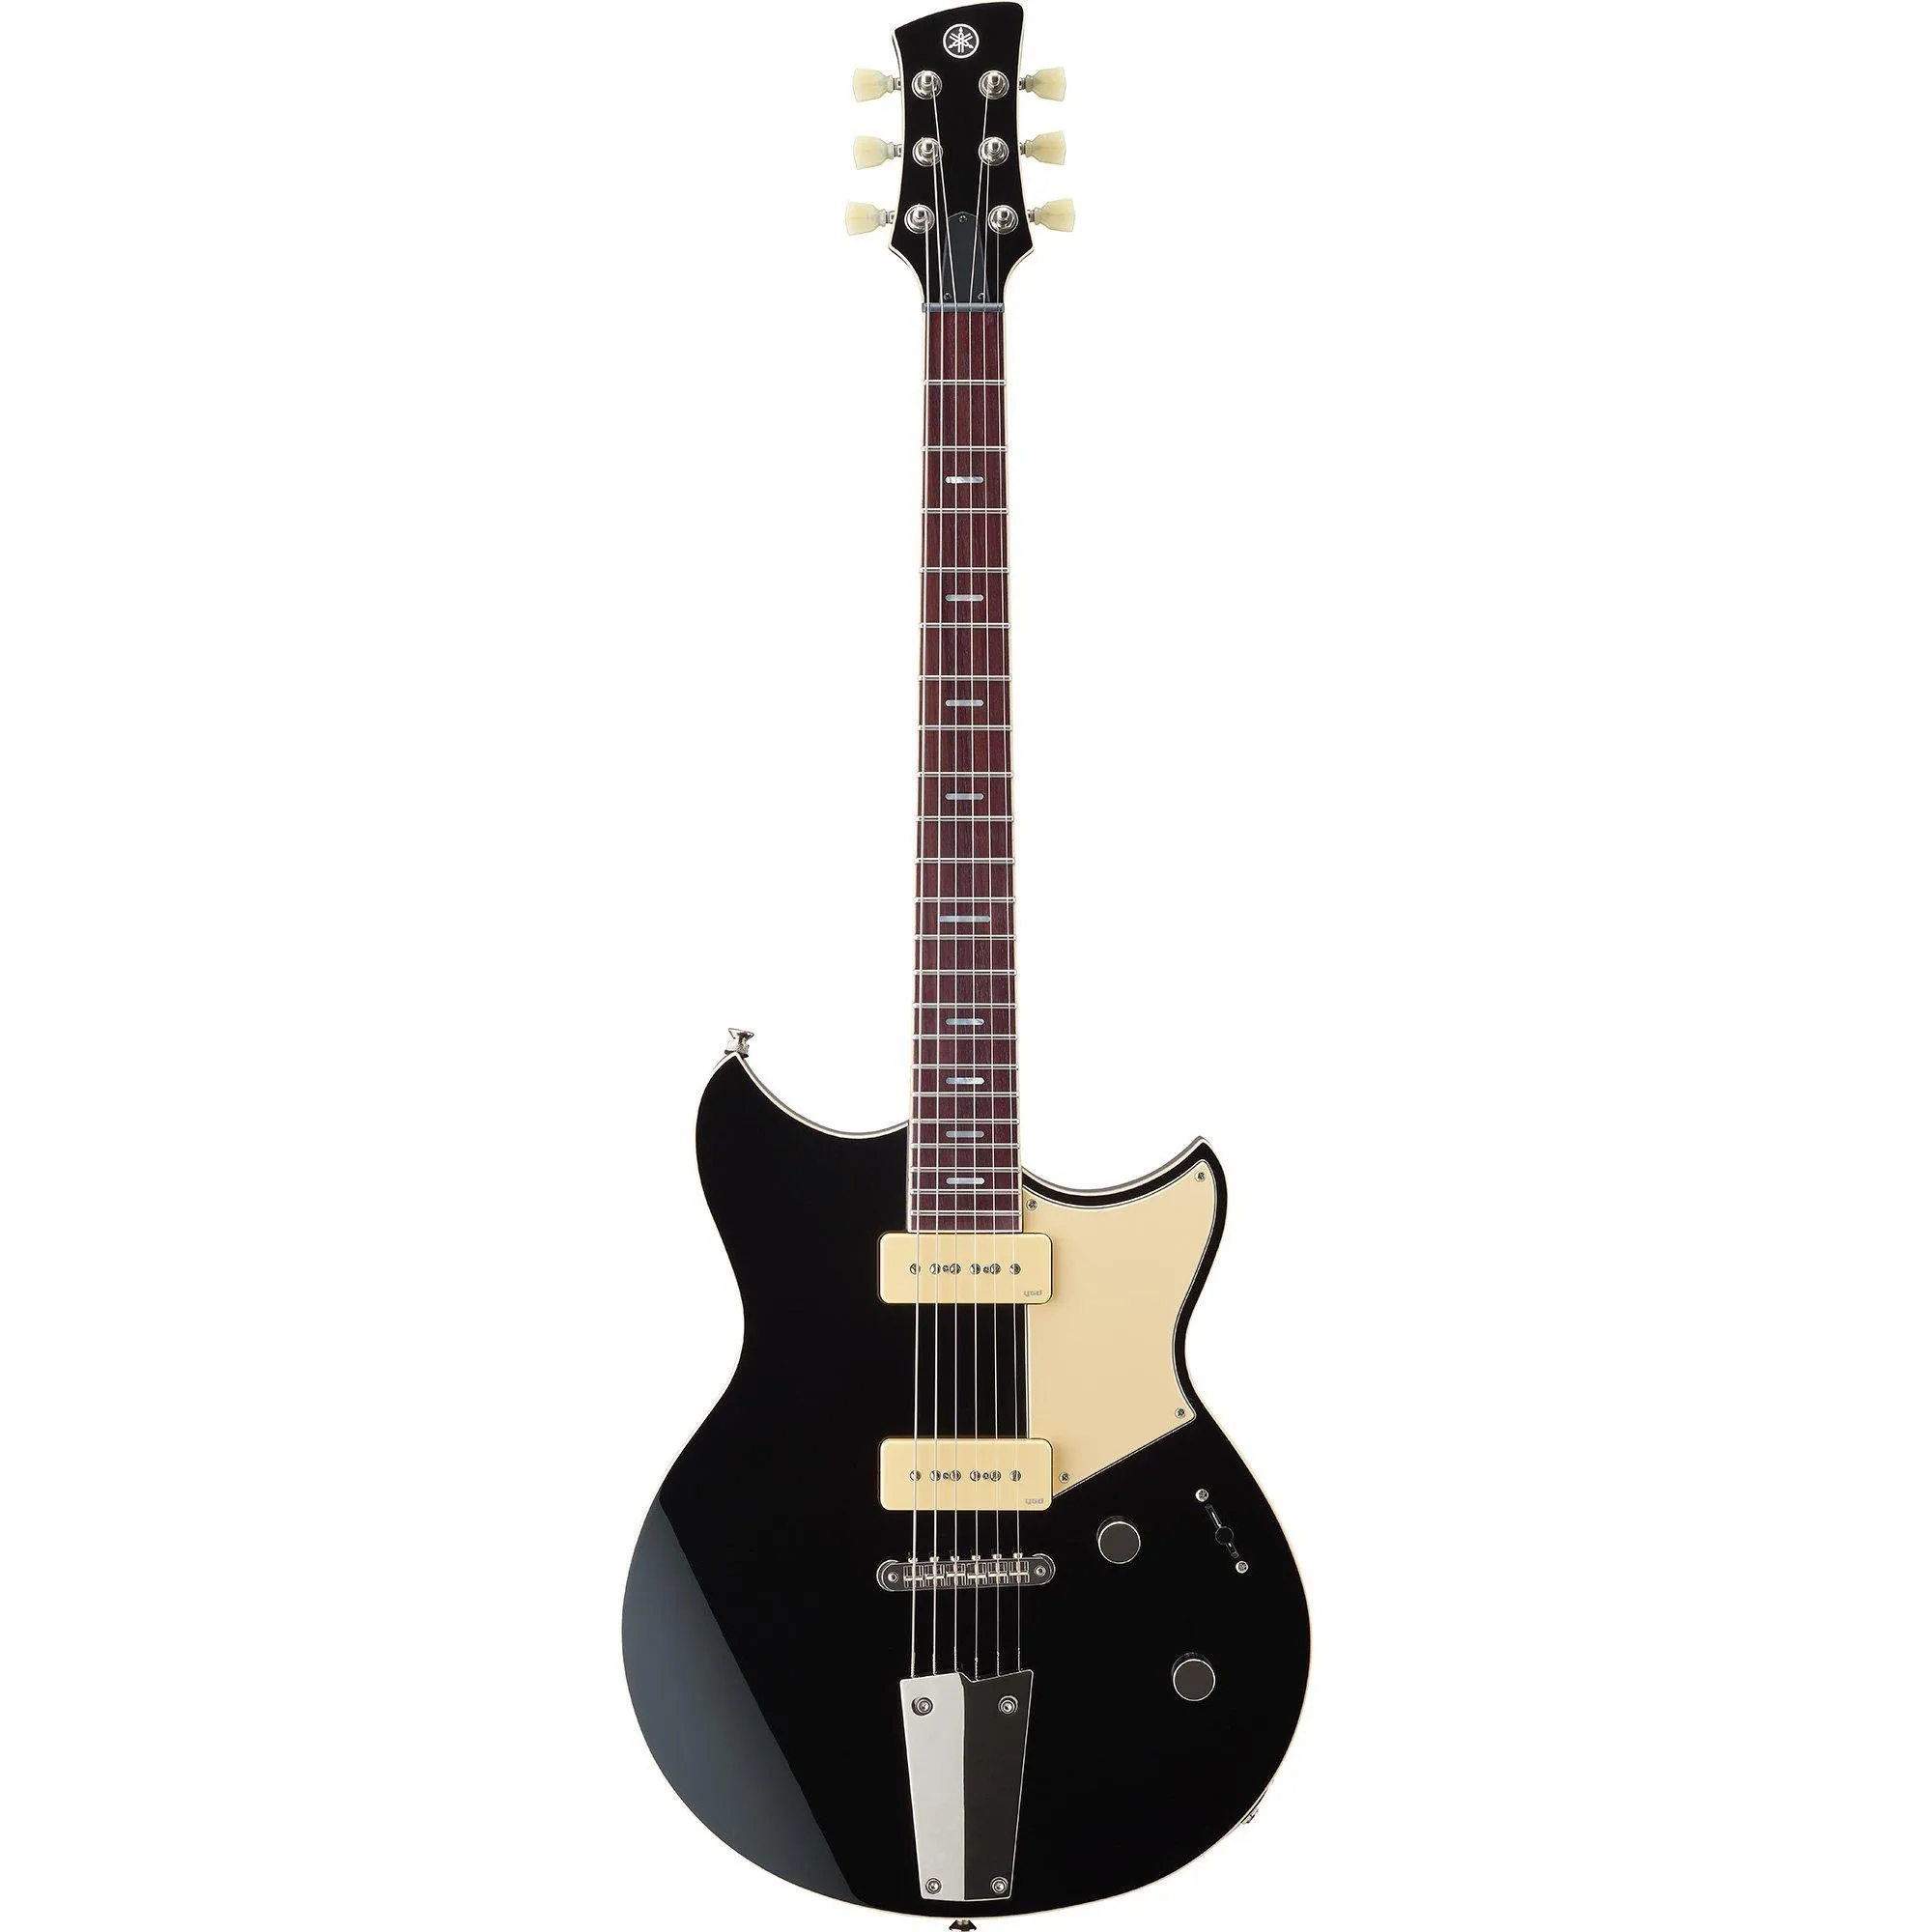 Guitarra Yamaha Revstar RSS 02T Black por 7.288,99 à vista no boleto/pix ou parcele em até 12x sem juros. Compre na loja Mundomax!